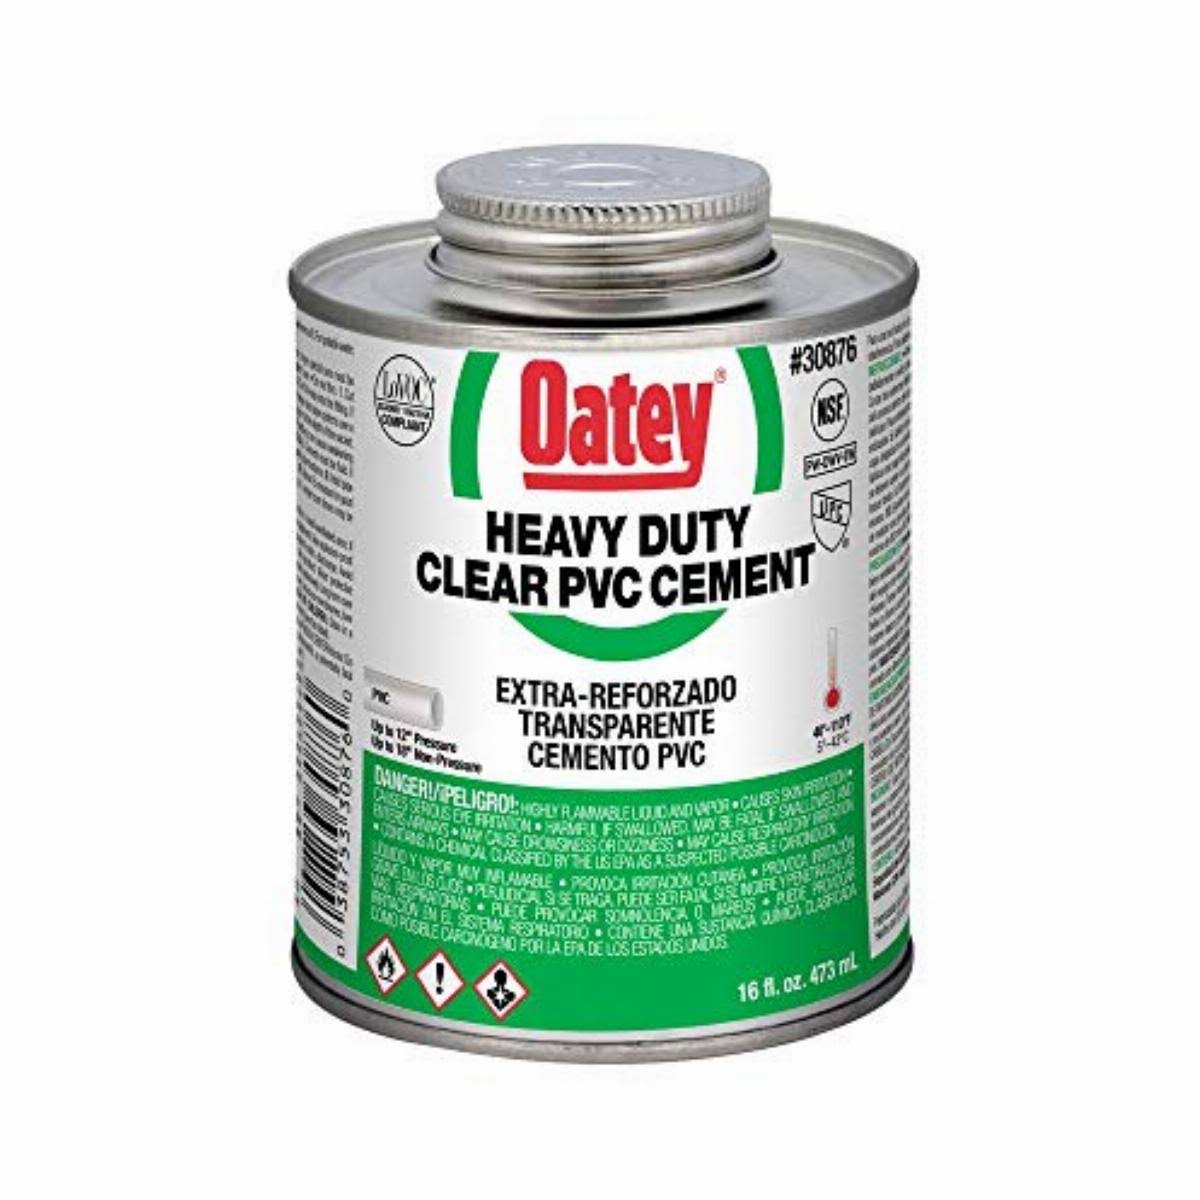 Oatey Heavy Duty PVC Cement - Clear, 473ml